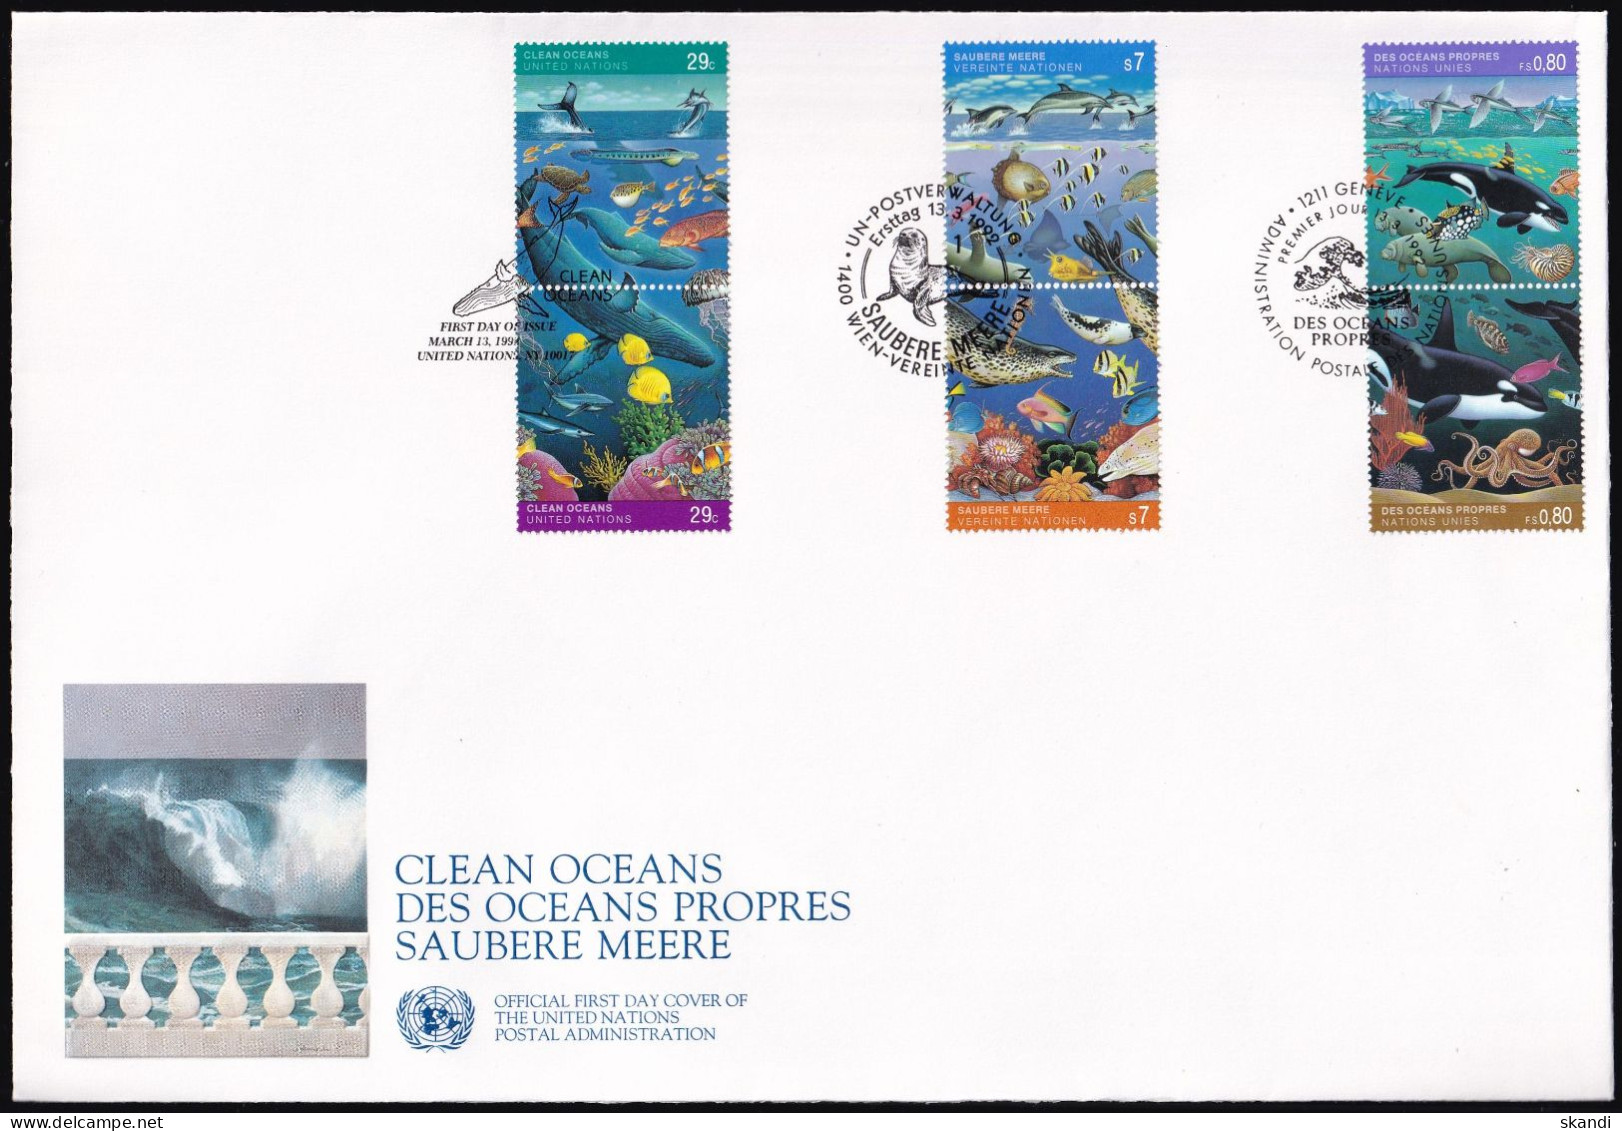 UNO NEW YORK - WIEN - GENF 1992 TRIO-FDC Saubere Meere - Gemeinschaftsausgaben New York/Genf/Wien